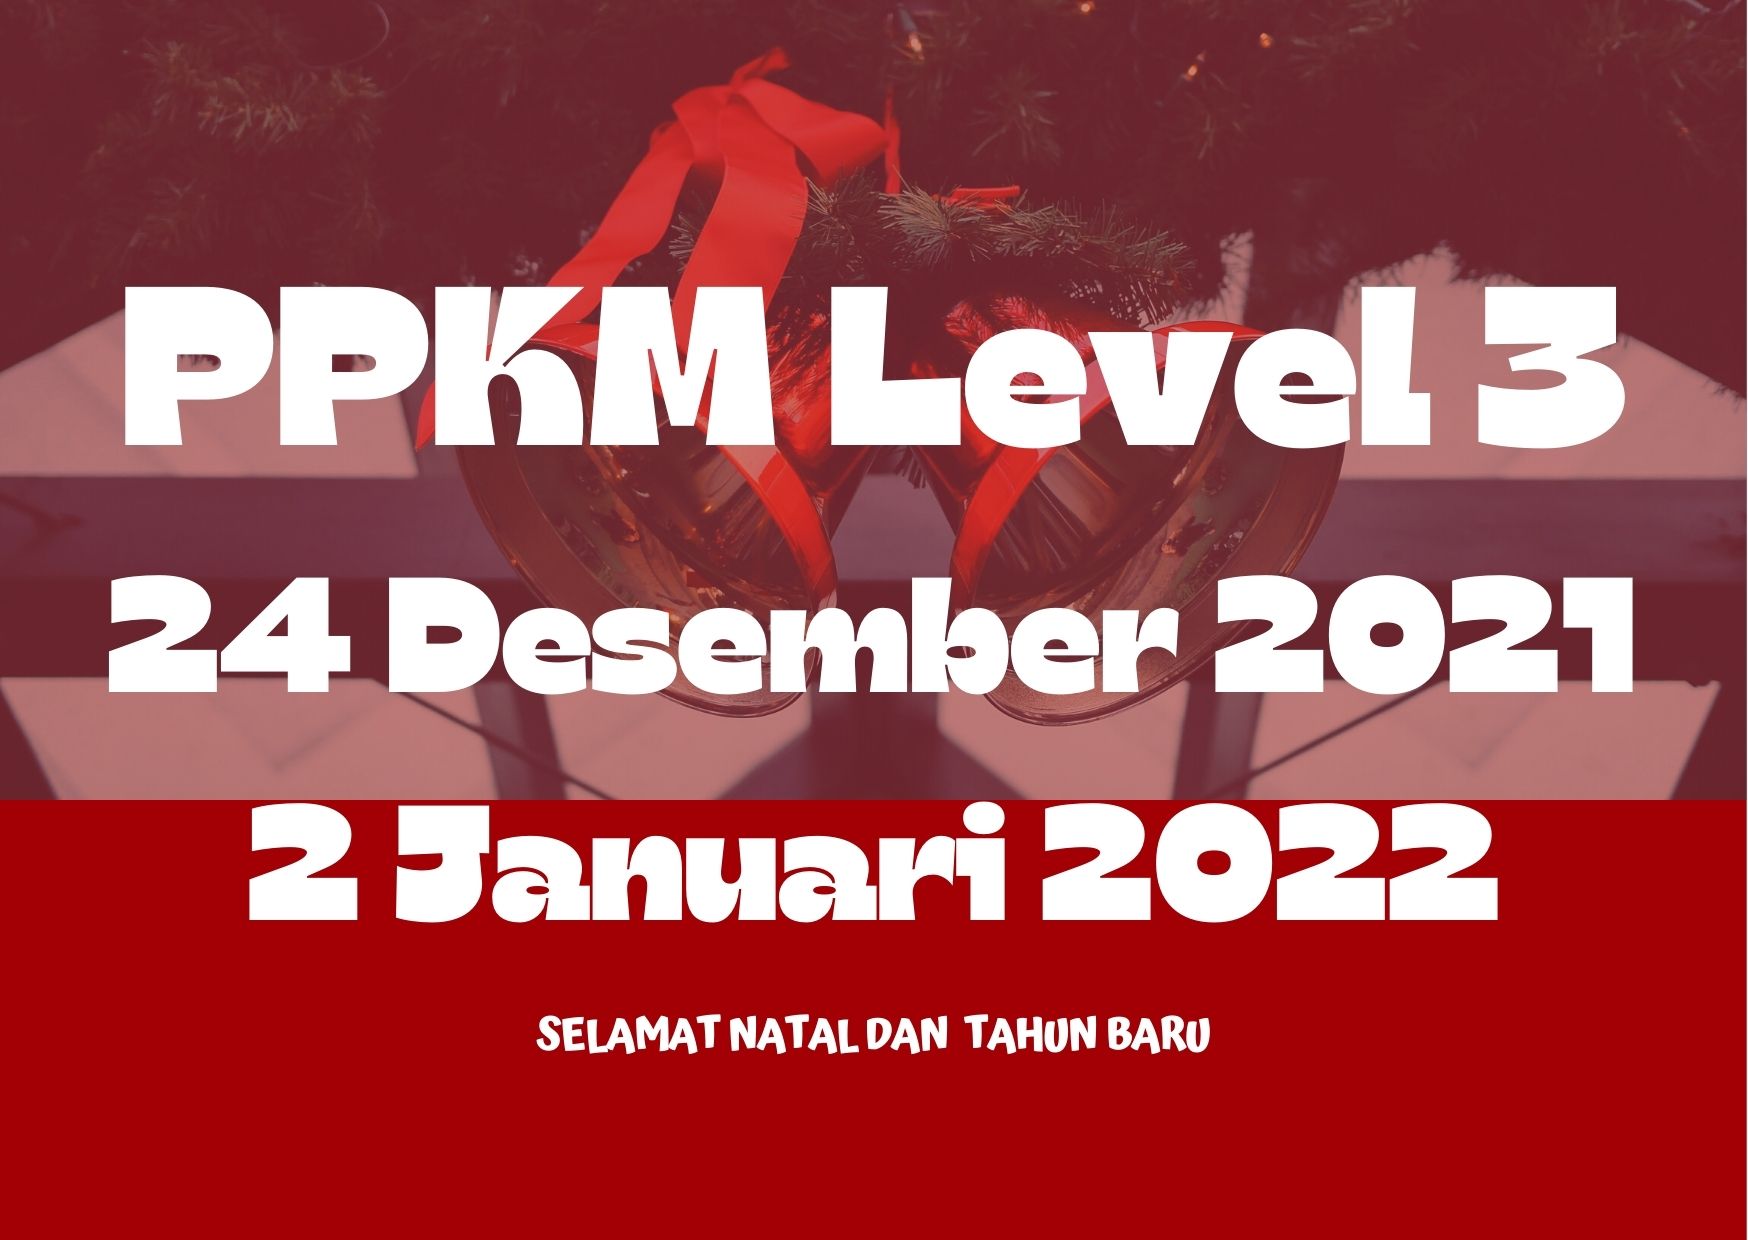  Pemberlakuan Pembatasan Kegiatan Masyarakat (PPKM) Level 3 di Indonesia, mulai diberlakukan Rabu, 24 Desember 2021 hingga 2 Januari 2022.